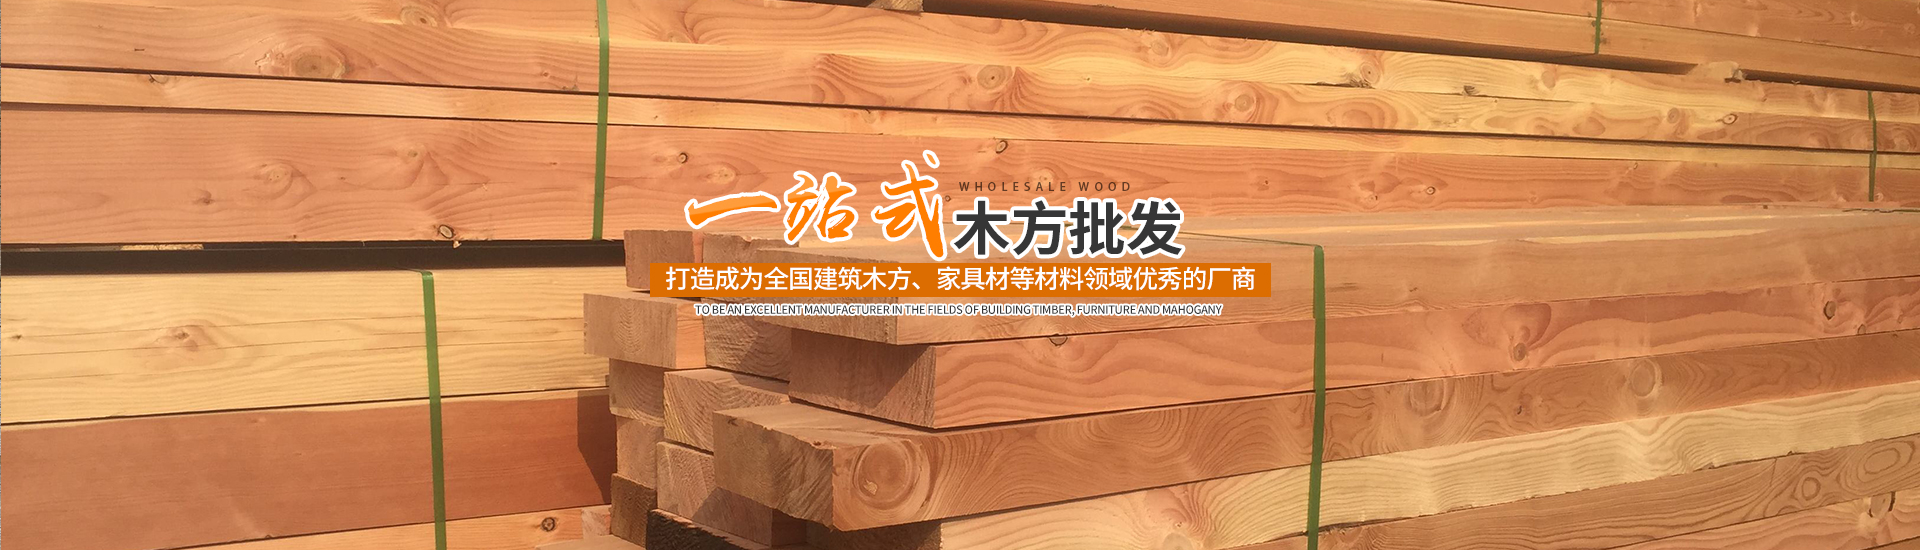 懷化市建均木業有限公司_湖南建筑木材加工銷售|湖南實木家具材加工銷售|湖南包裝箱板材加工銷售